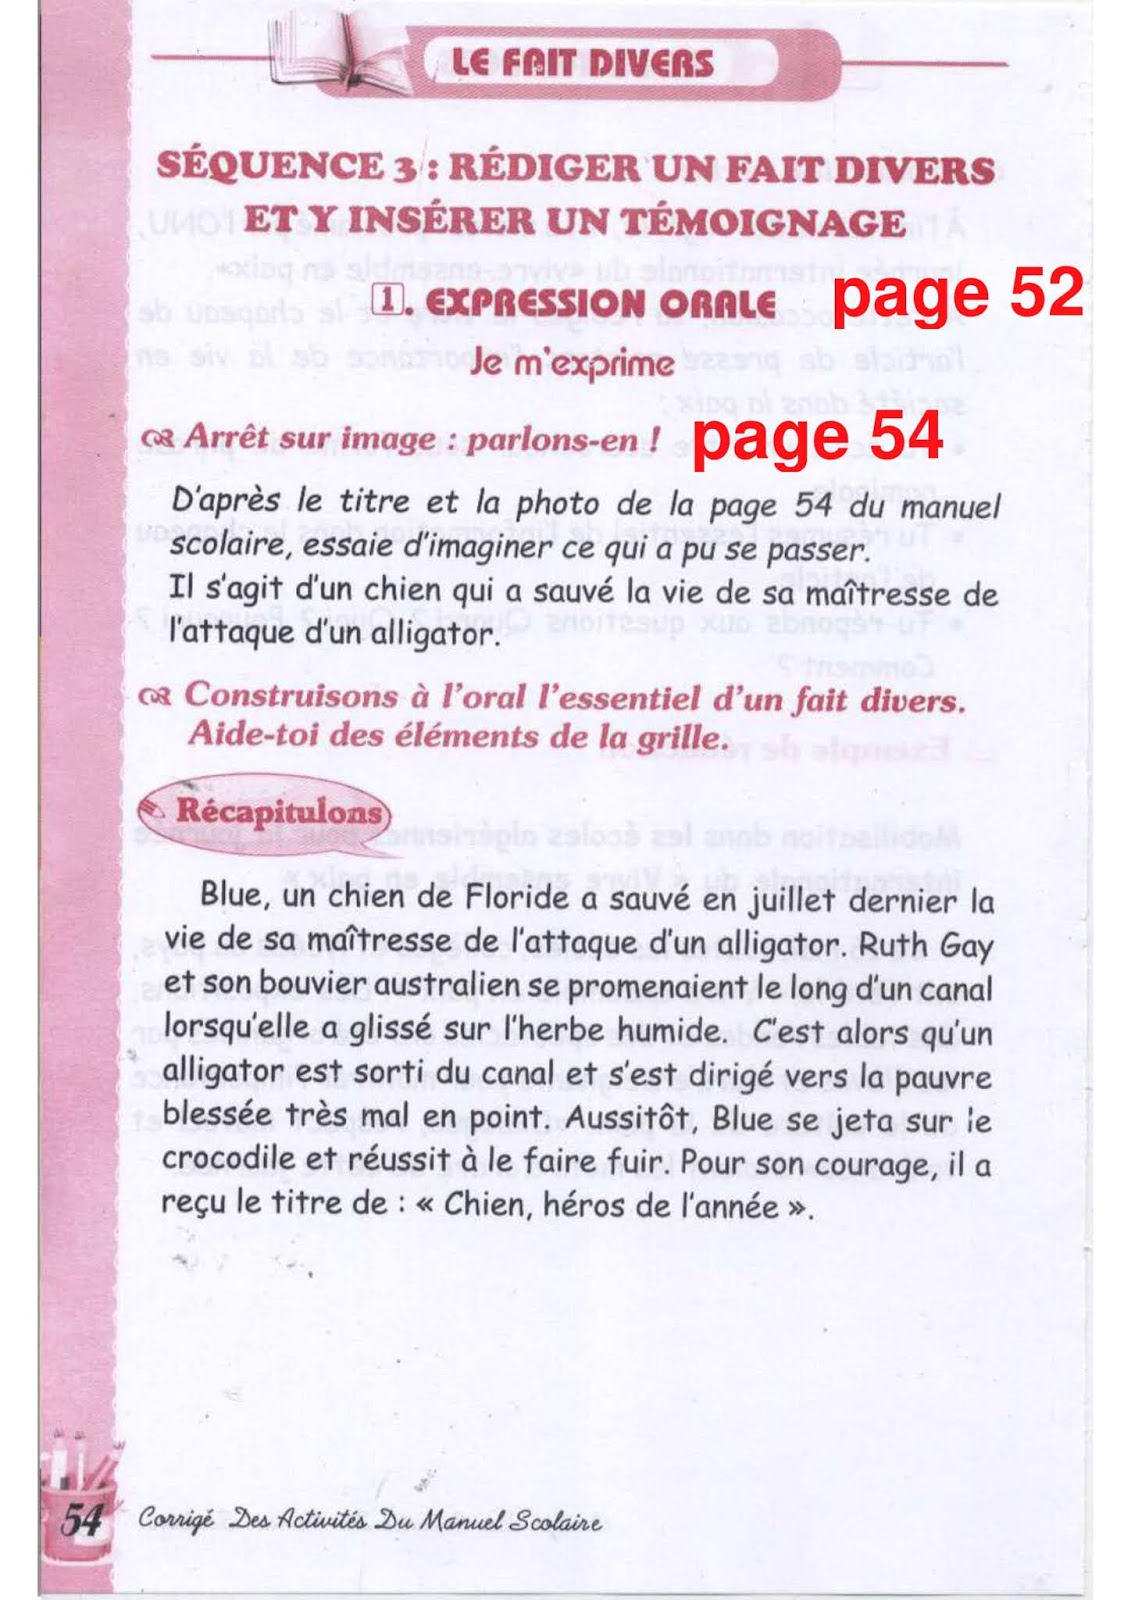 حل تمارين صفحة 54 الفرنسية للسنة الثالثة متوسط - الجيل الثاني